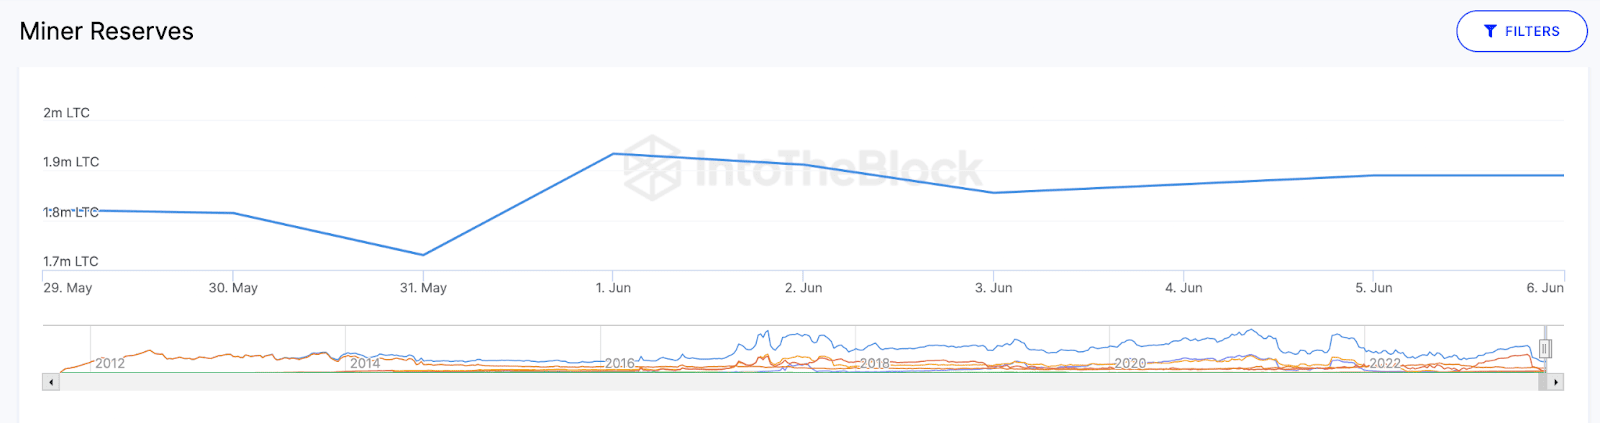 Майнери Litecoin зараз володіють близько 2,5% усіх монет в обороті.
